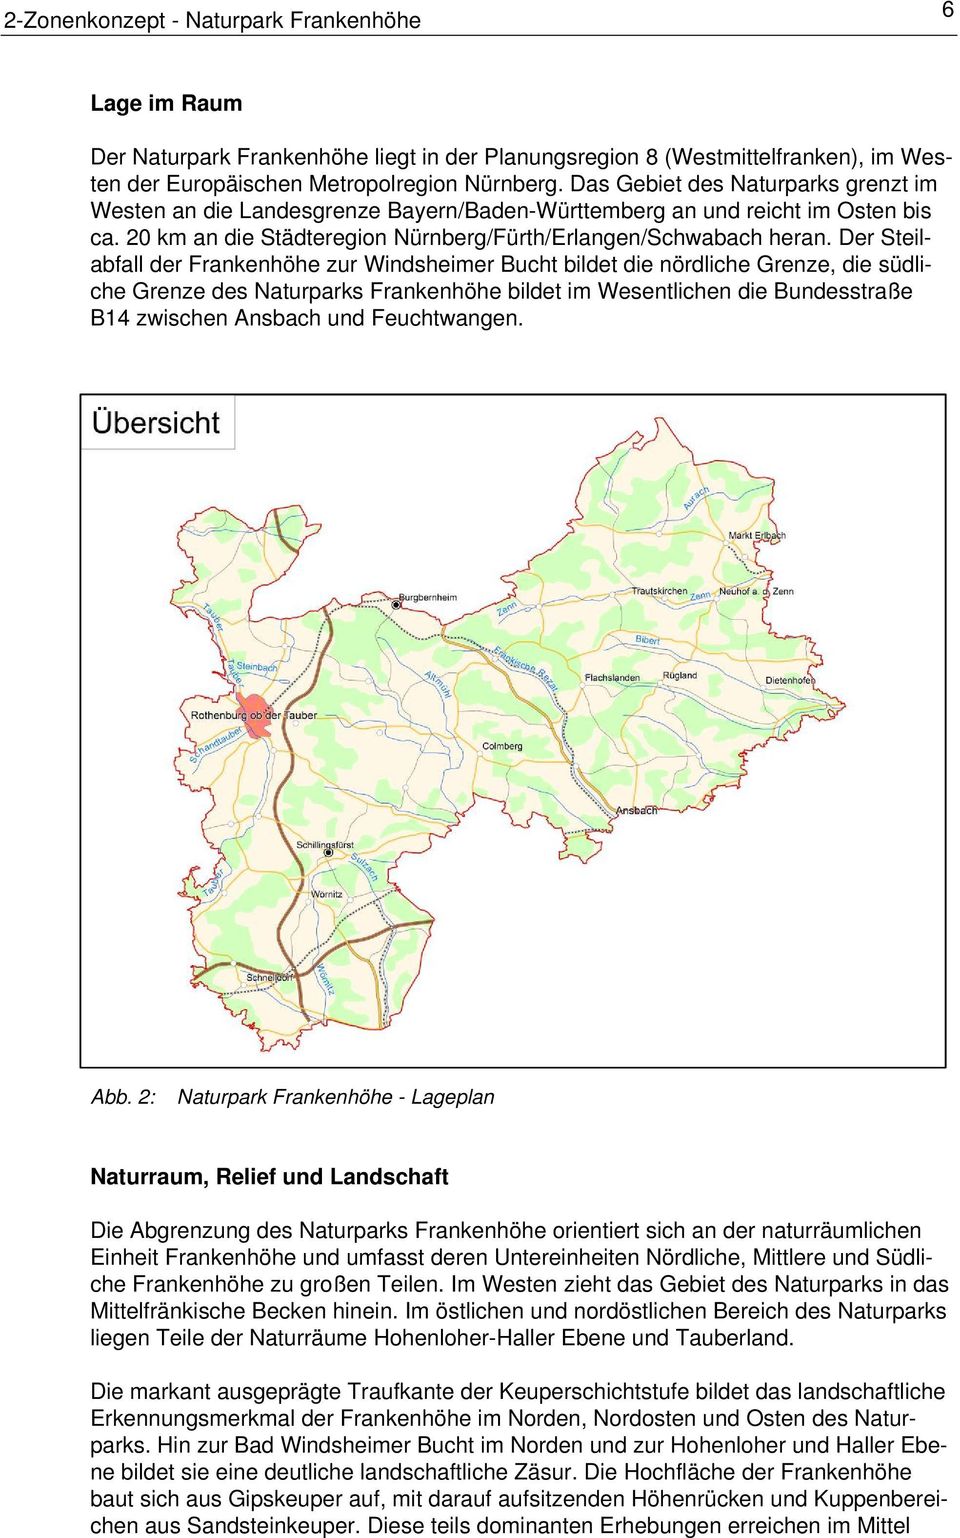 Der Steilabfall der Frankenhöhe zur Windsheimer Bucht bildet die nördliche Grenze, die südliche Grenze des Naturparks Frankenhöhe bildet im Wesentlichen die Bundesstraße B14 zwischen Ansbach und